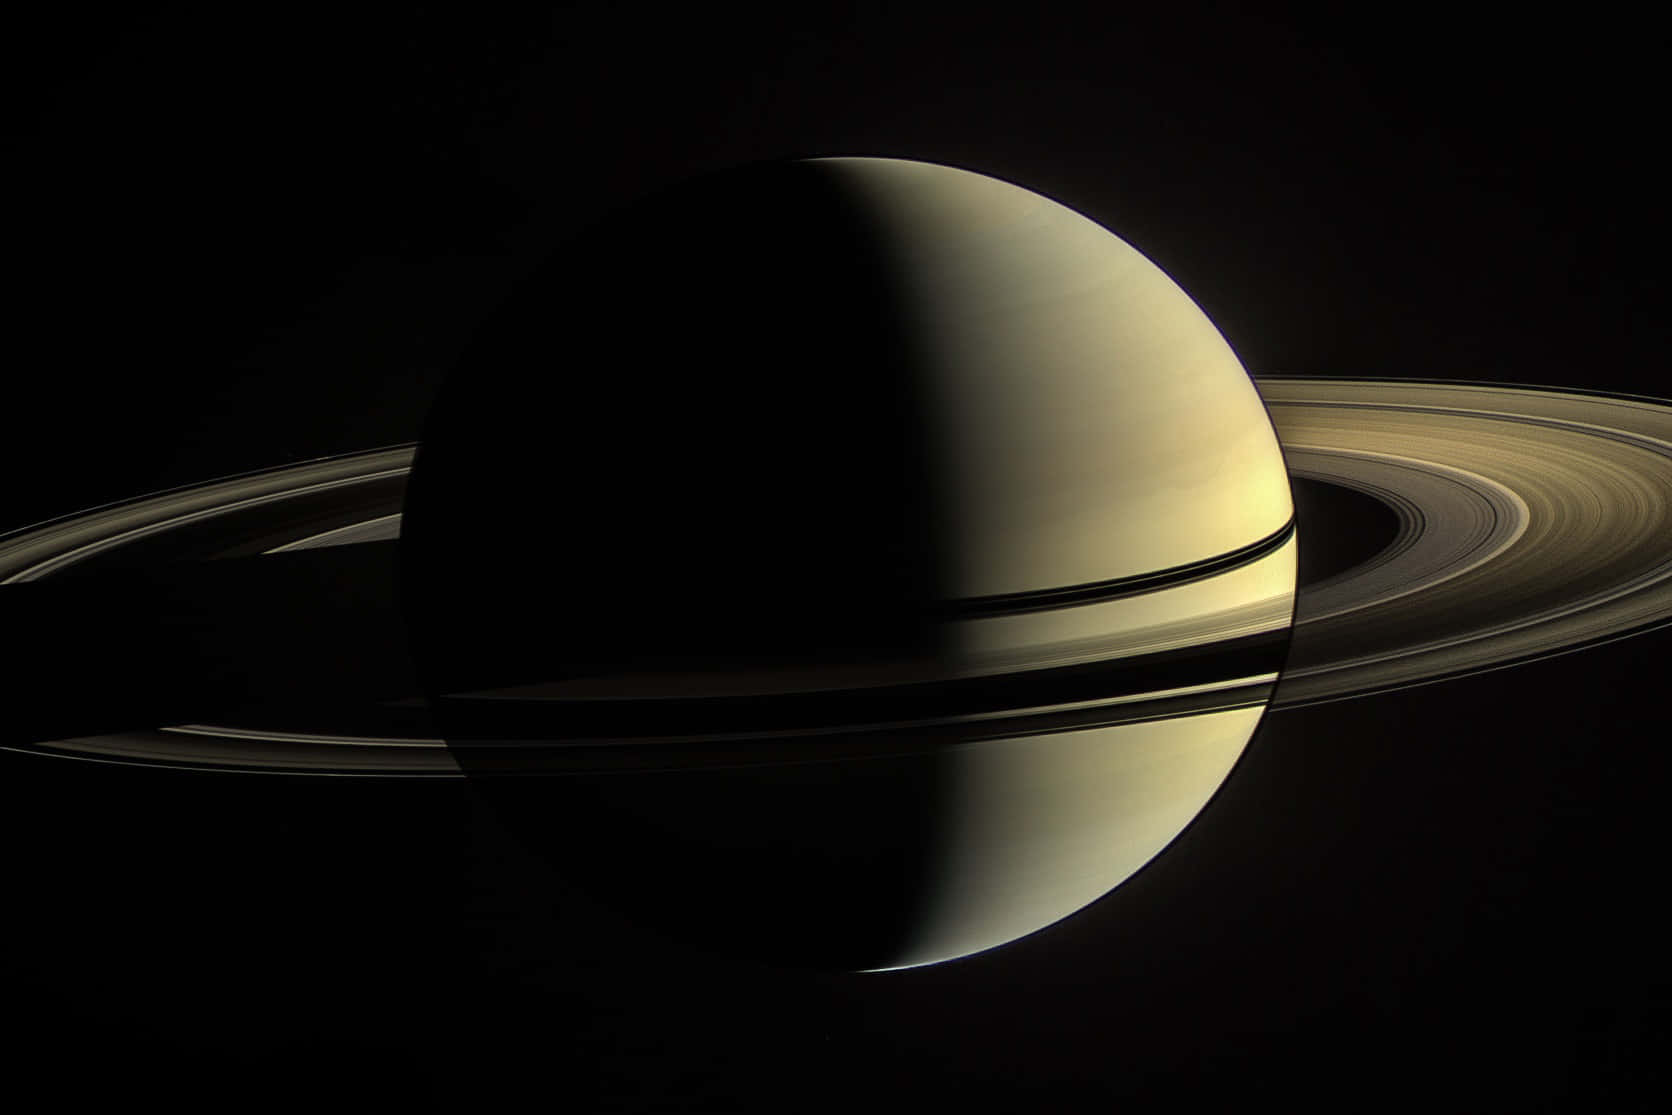 Unaimagen Cautivadora En Primer Plano De Saturno.